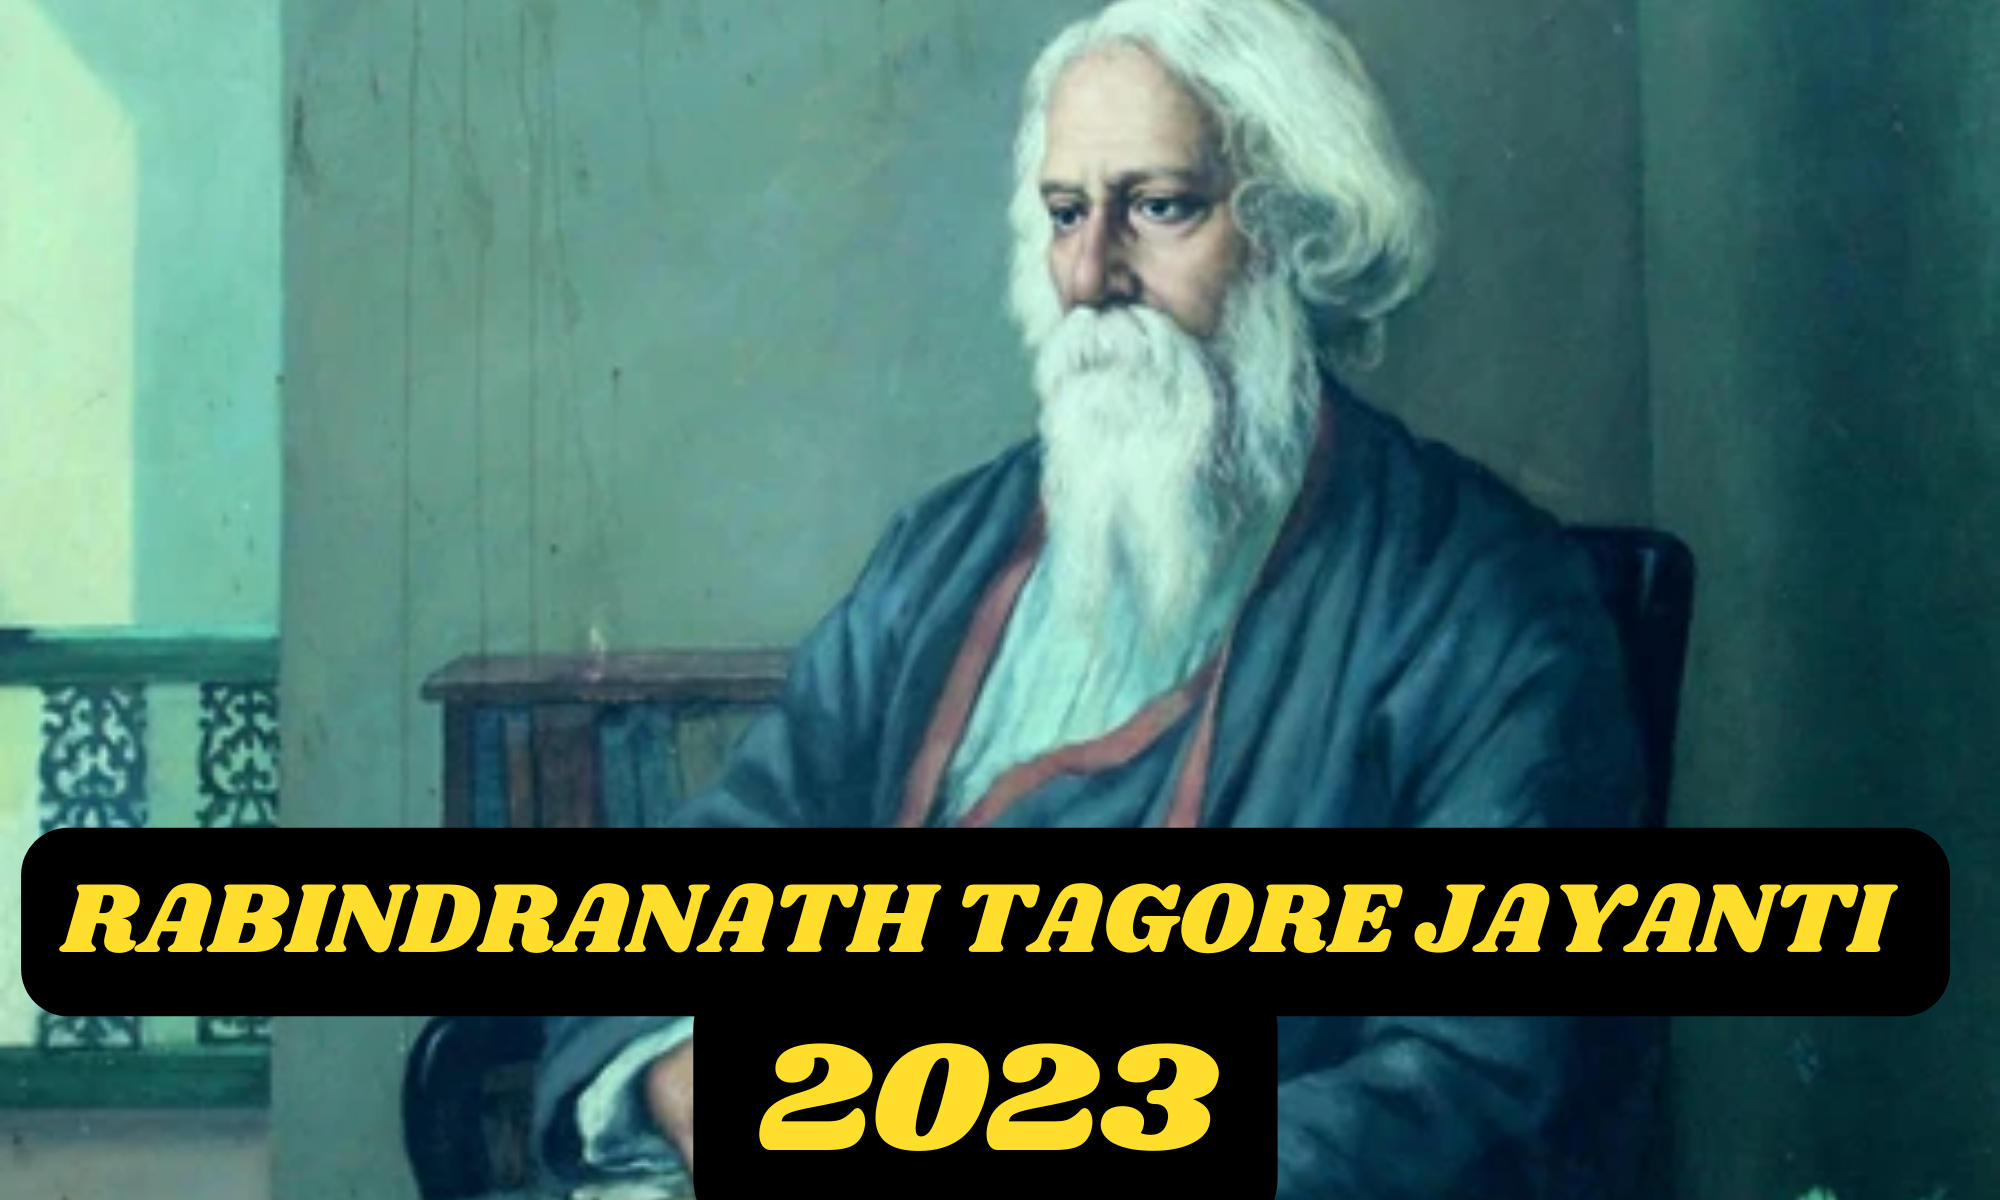 Rabindranath Tagore Jayanti 2023 